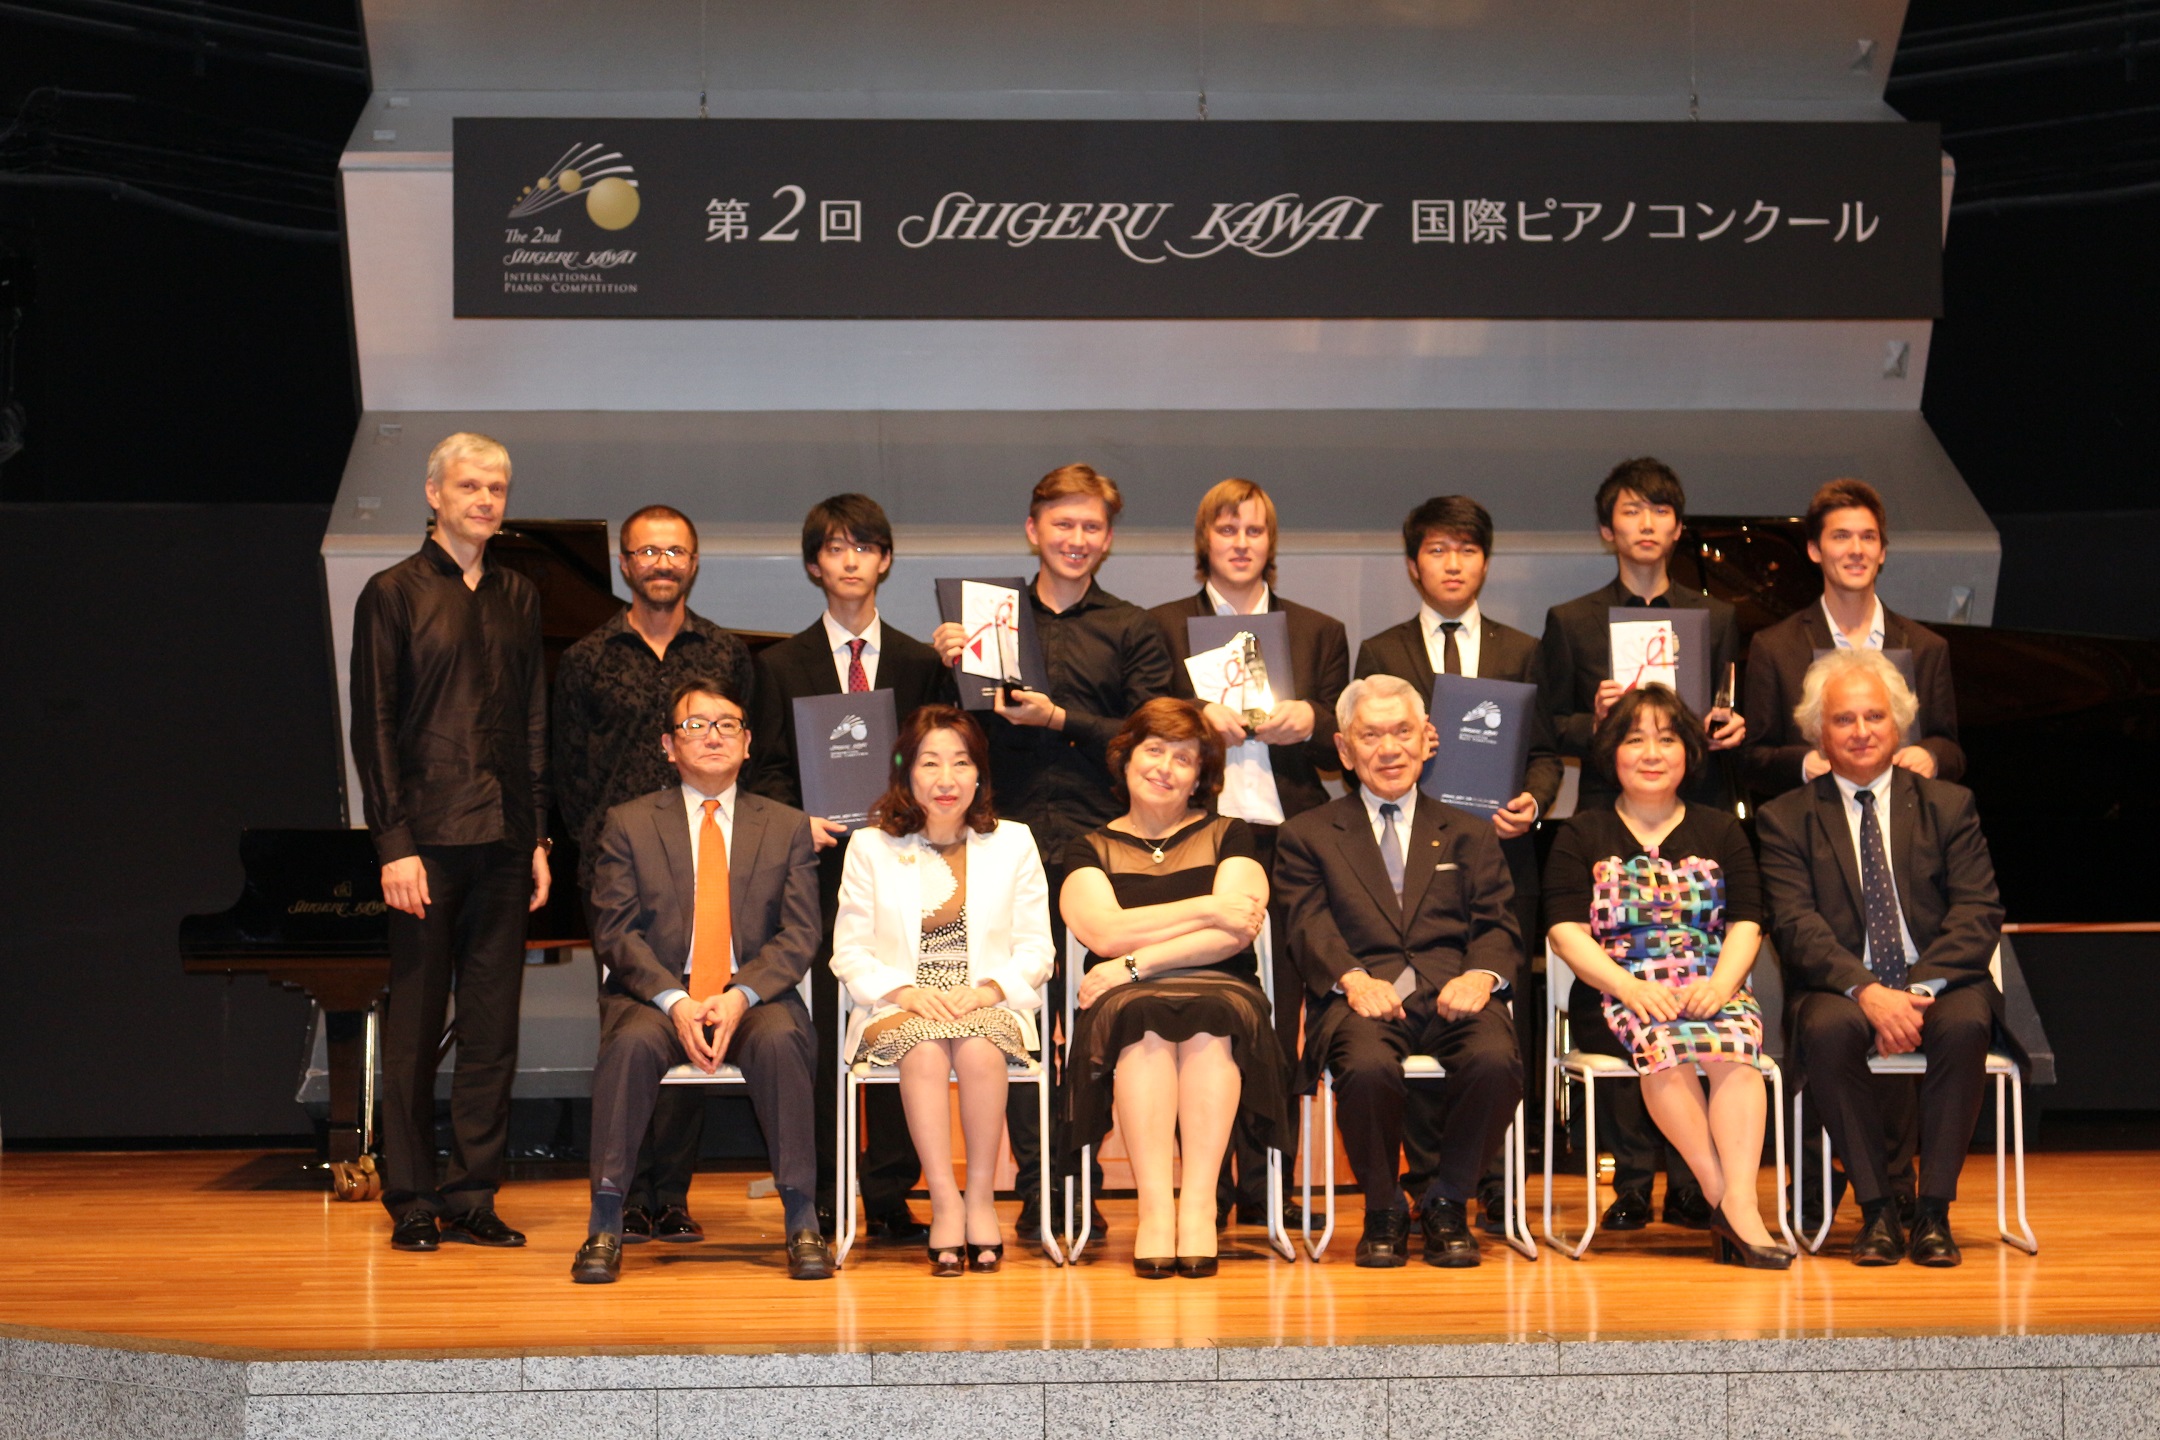 第2回Shigeru Kawai 国際ピアノコンクール受賞者